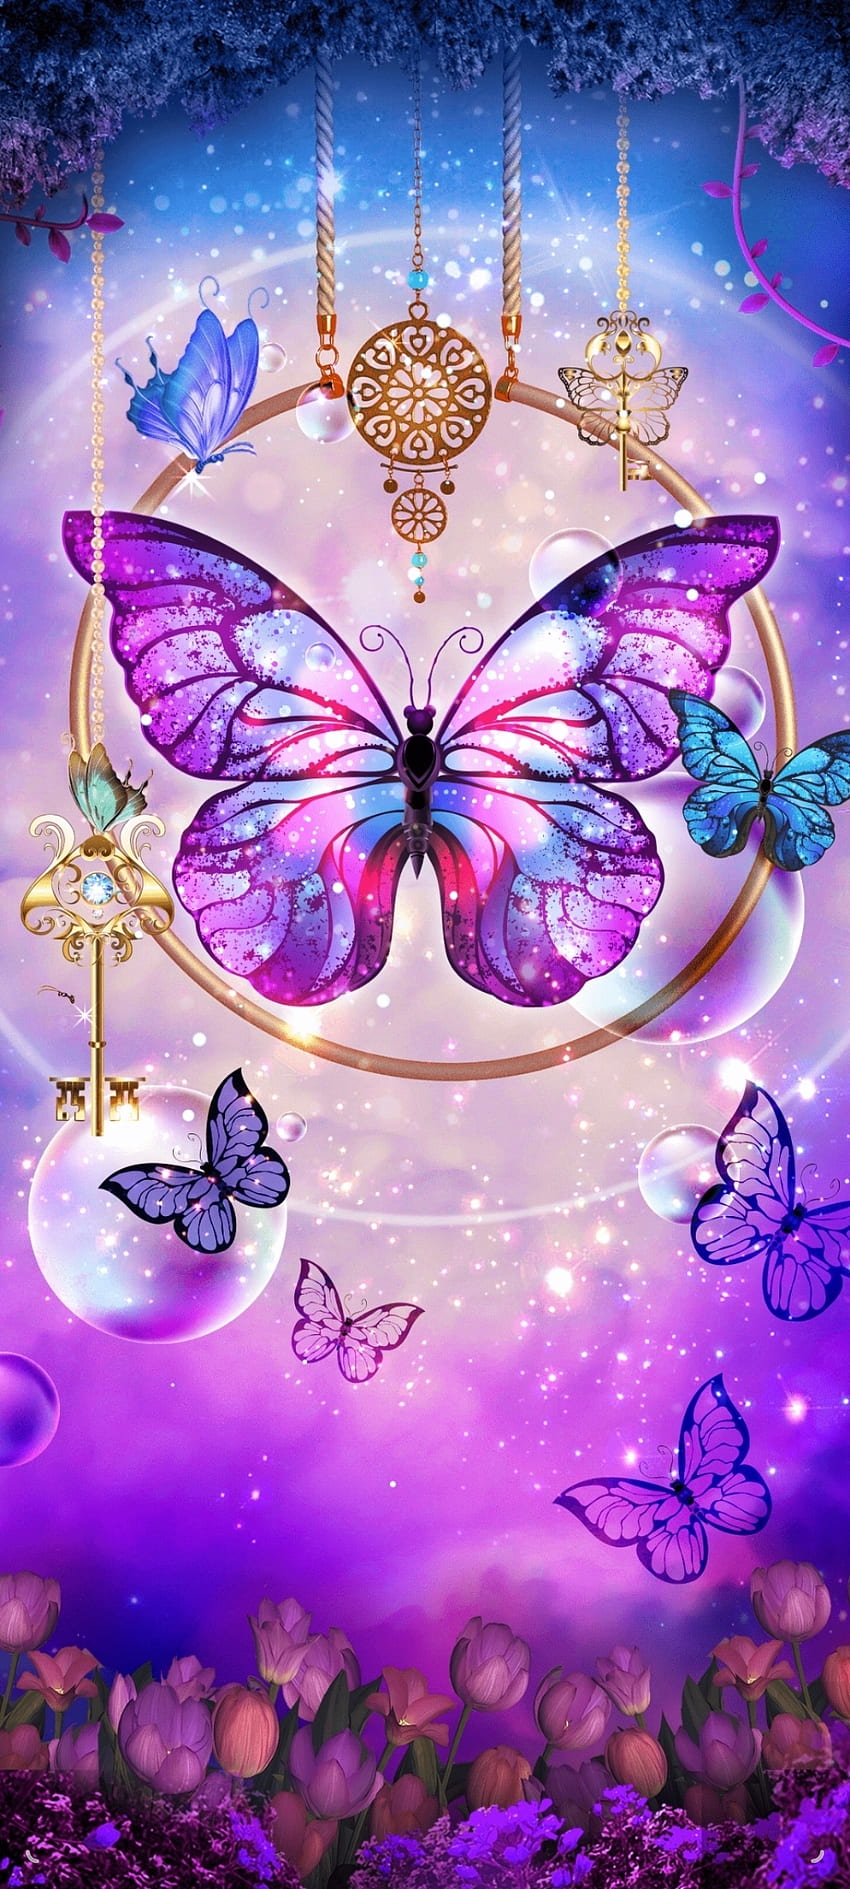 Butterfly Queen, jewelry, flowers, pastel, Pink, blue, light, Keys ...